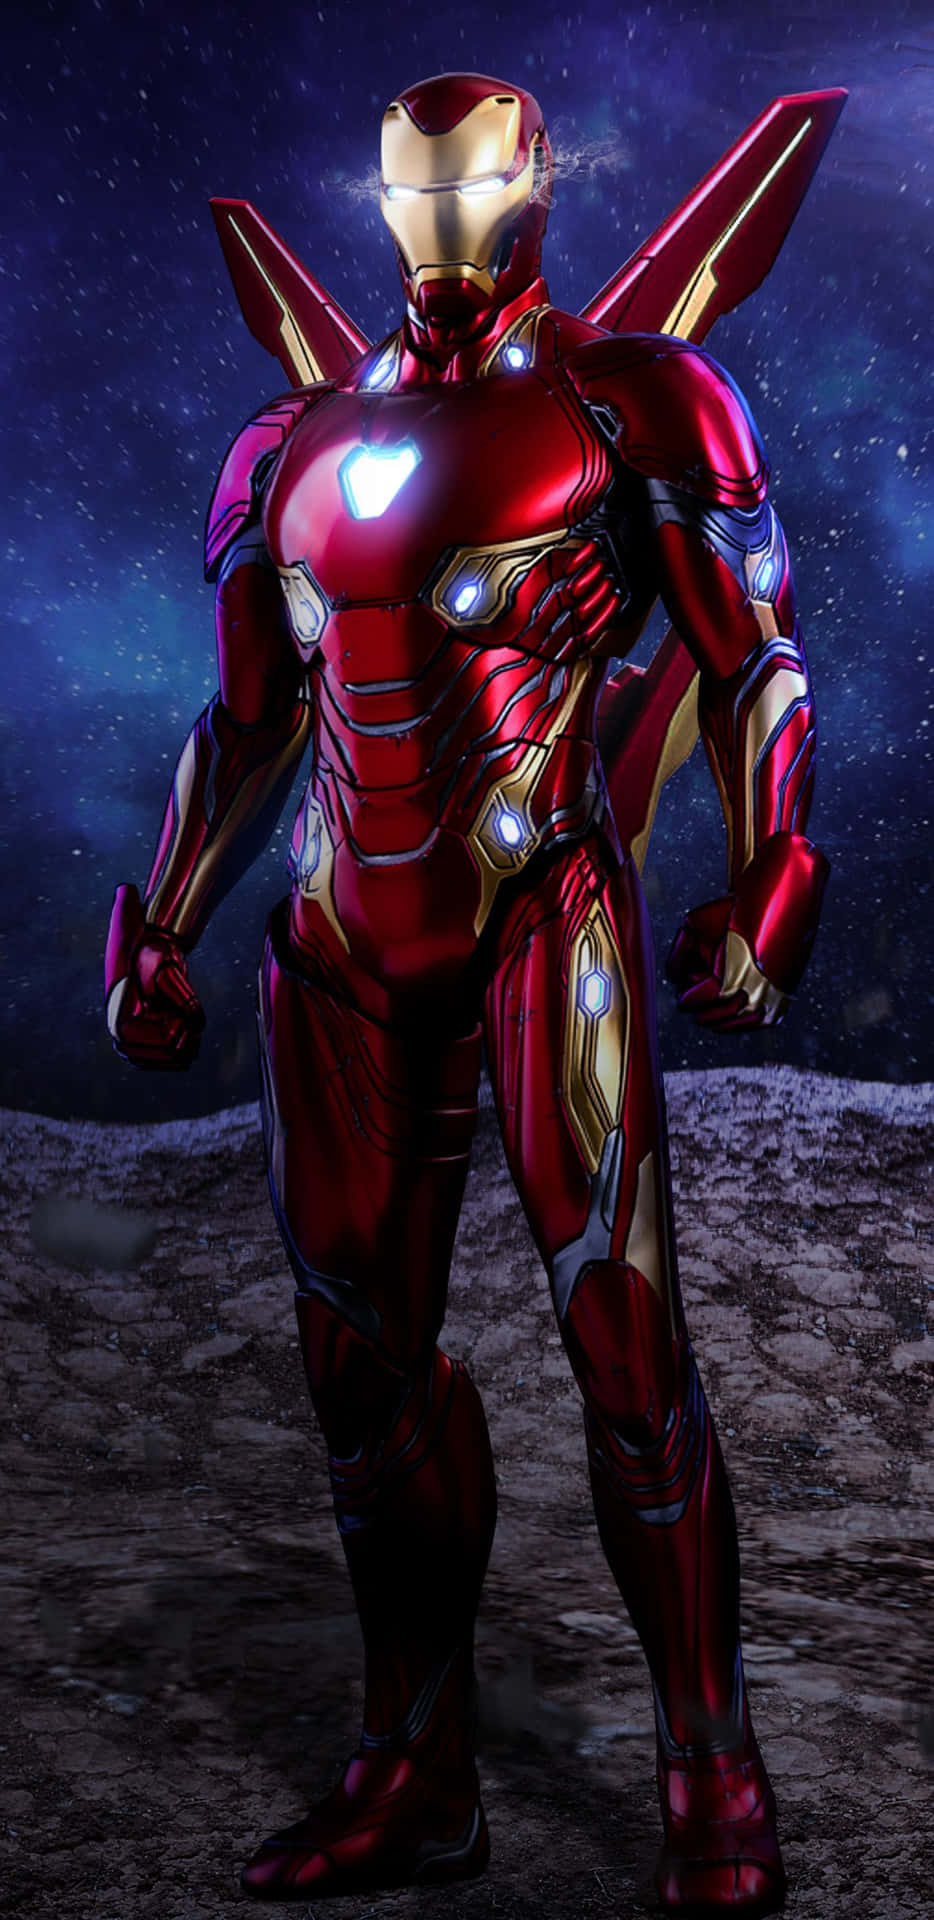 Ironman Se Une A Los Vengadores Para Luchar Por La Justicia. Fondo de pantalla